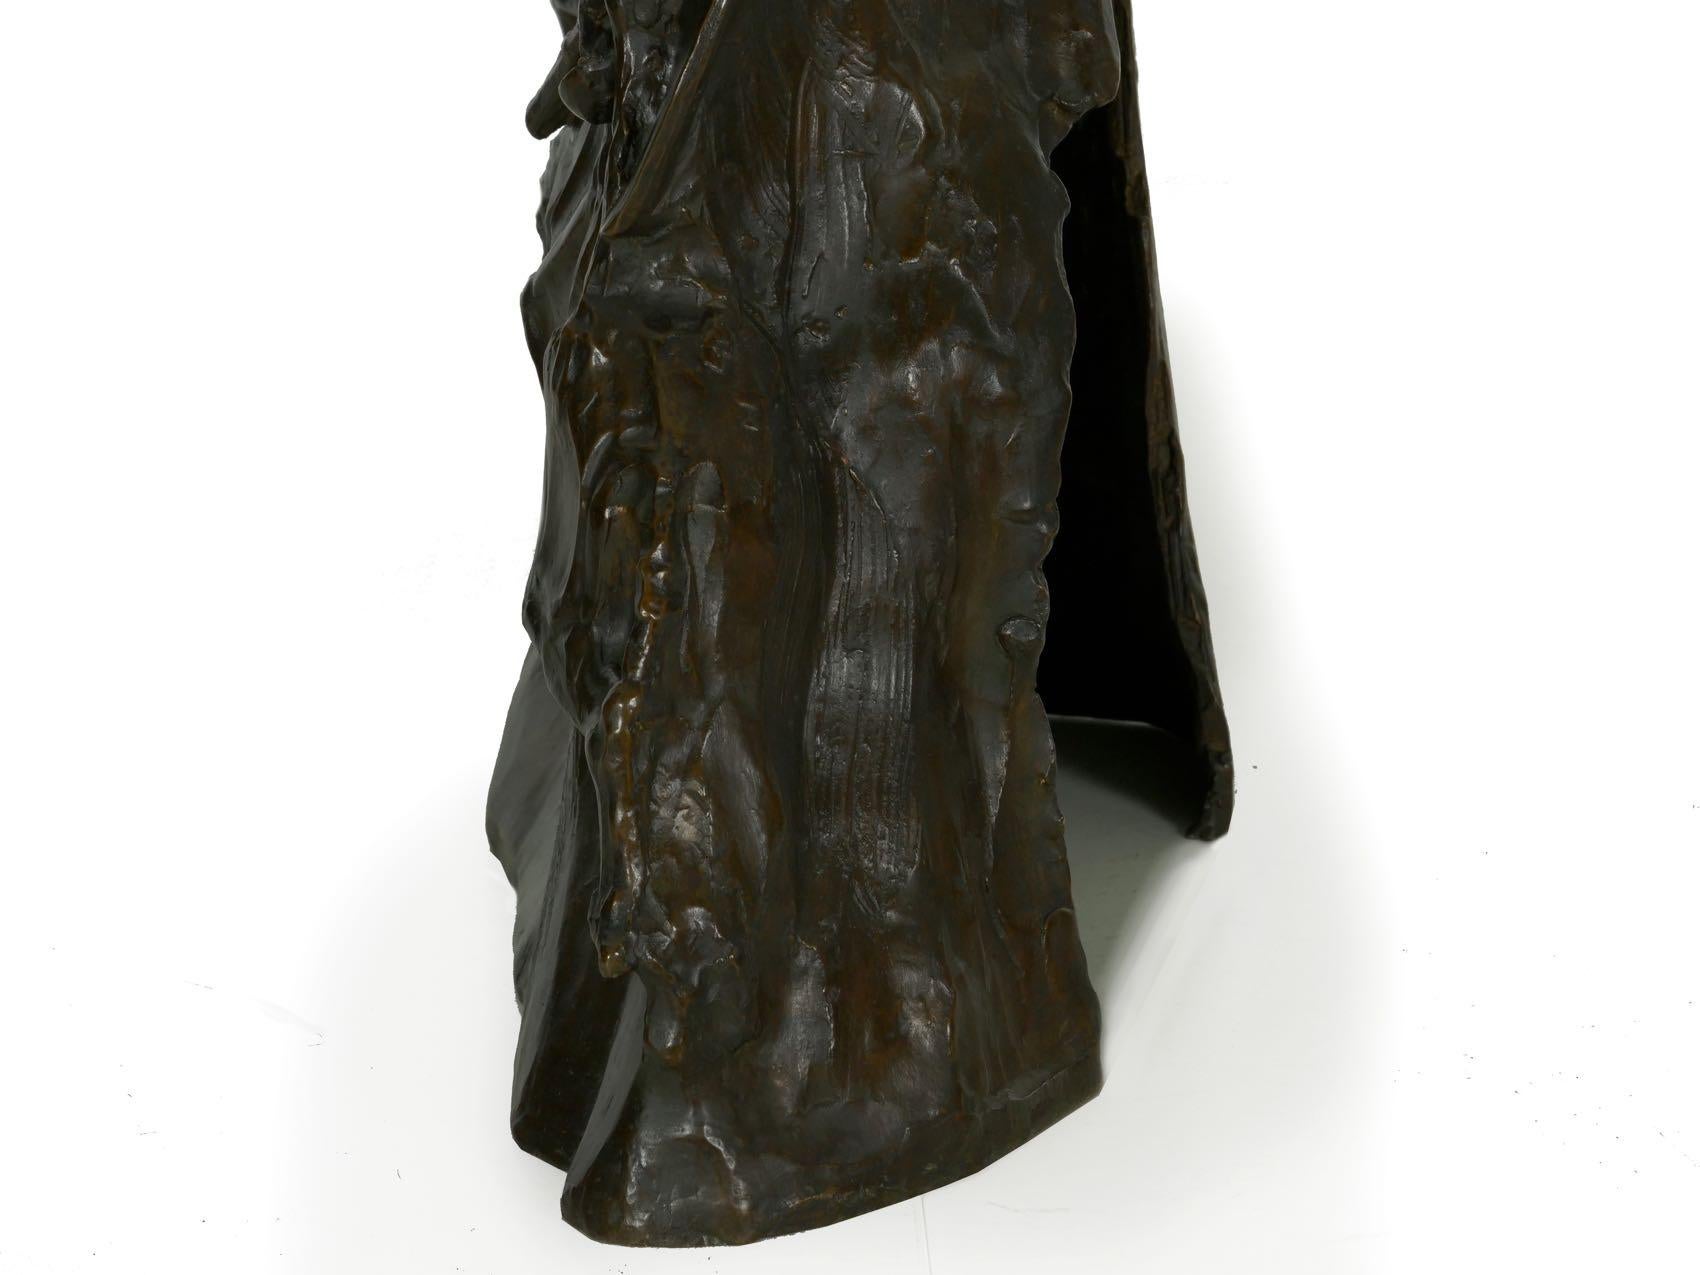 Art Deco Bronze Sculpture of “Four Horsemen of Apocalypse” by Lee Lawrie 5